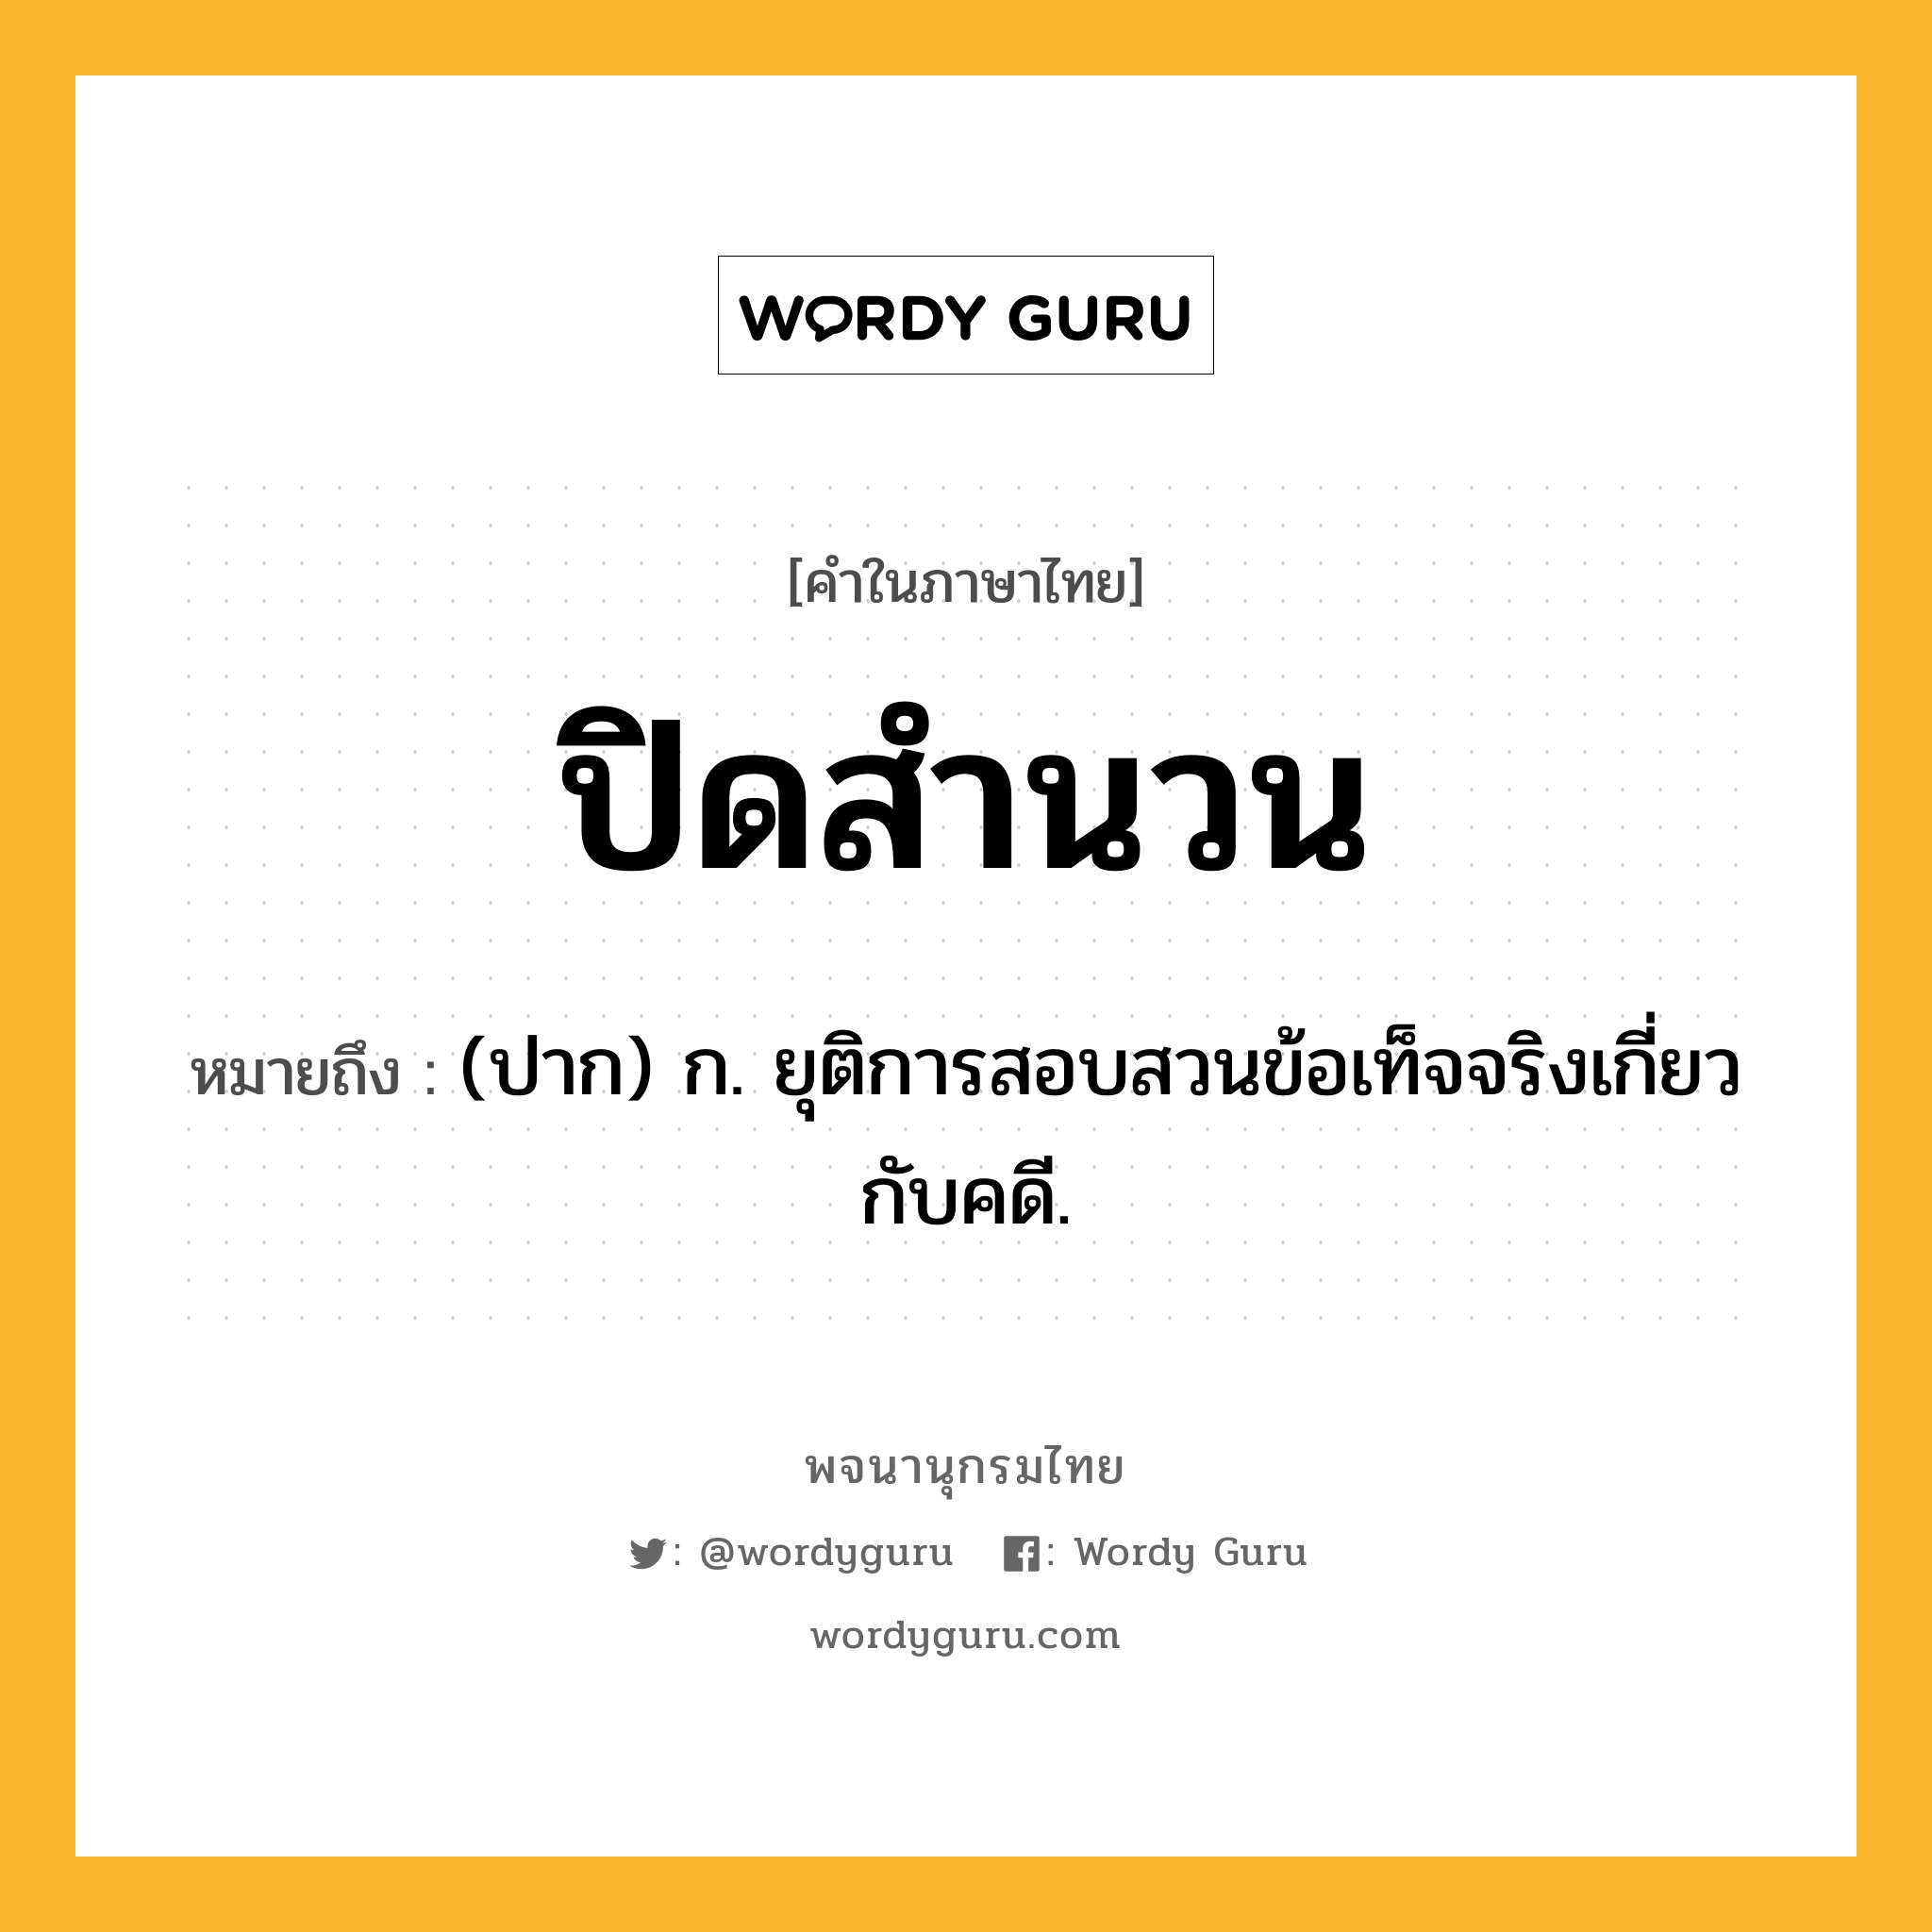 ปิดสำนวน ความหมาย หมายถึงอะไร?, คำในภาษาไทย ปิดสำนวน หมายถึง (ปาก) ก. ยุติการสอบสวนข้อเท็จจริงเกี่ยวกับคดี.